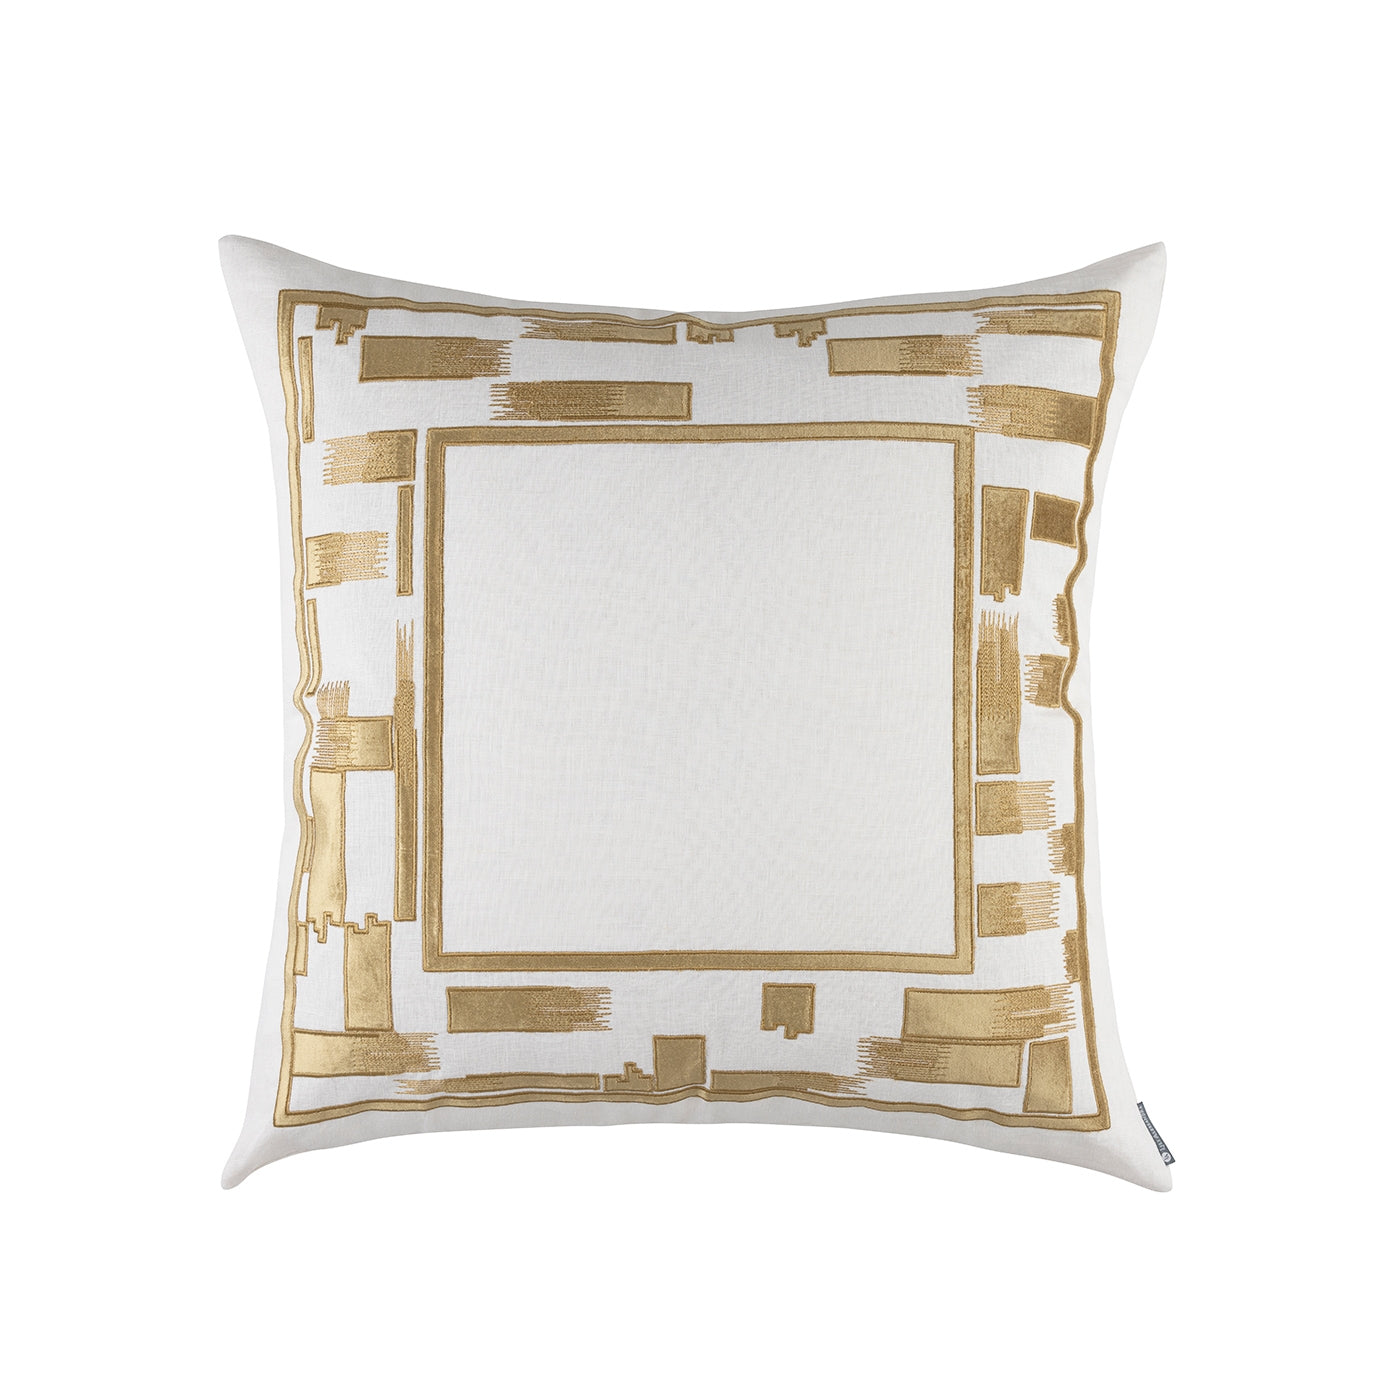 Capri European Pillow White / Straw 28X28